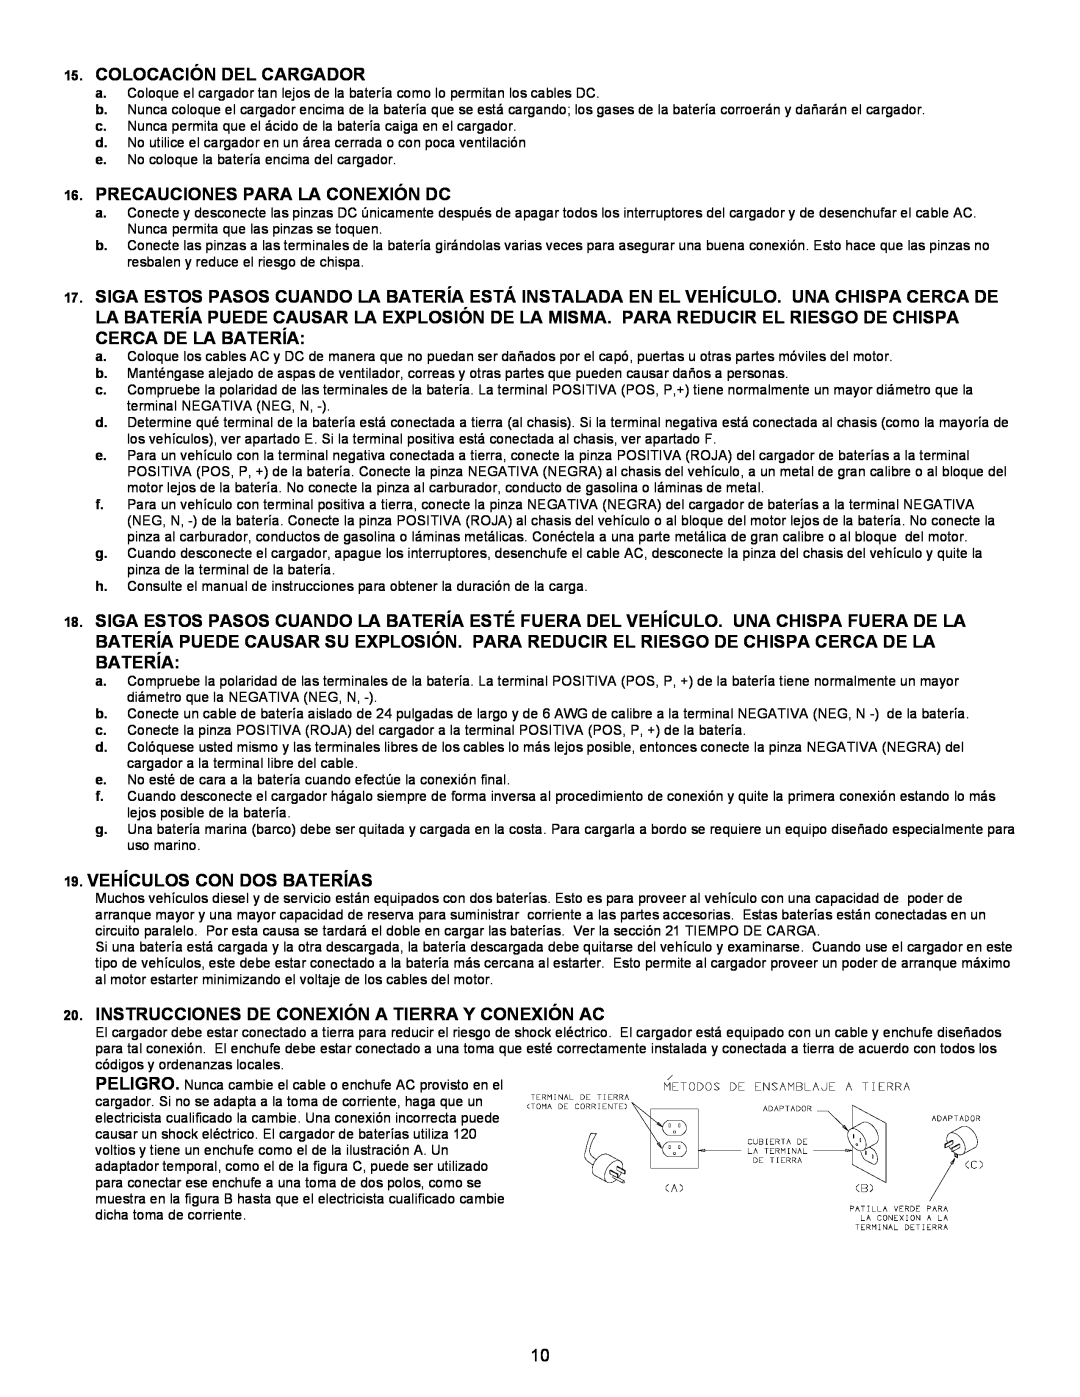 Atec BC-91182, 9182 manual Colocación Del Cargador, Precauciones Para La Conexión Dc, Vehículos Con Dos Baterías 